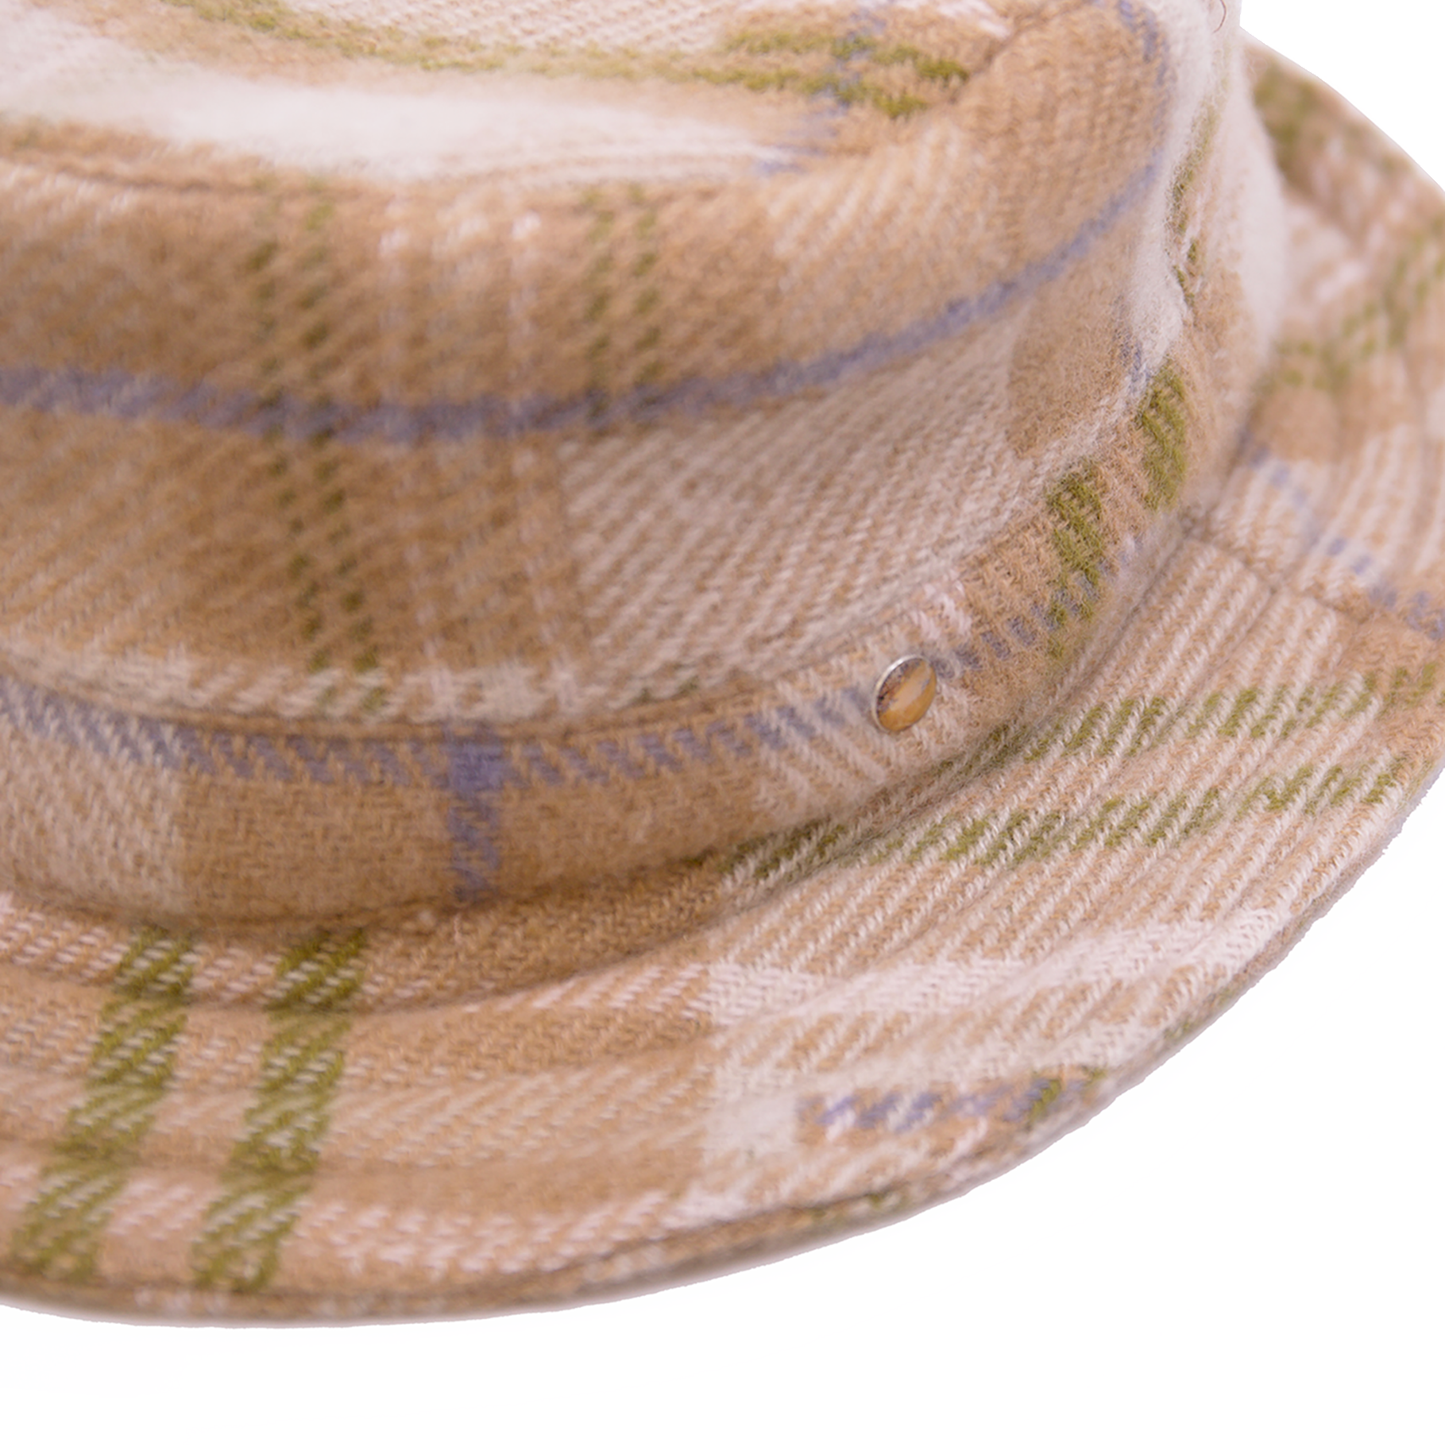 Patchwork Tartan Bucket Hat